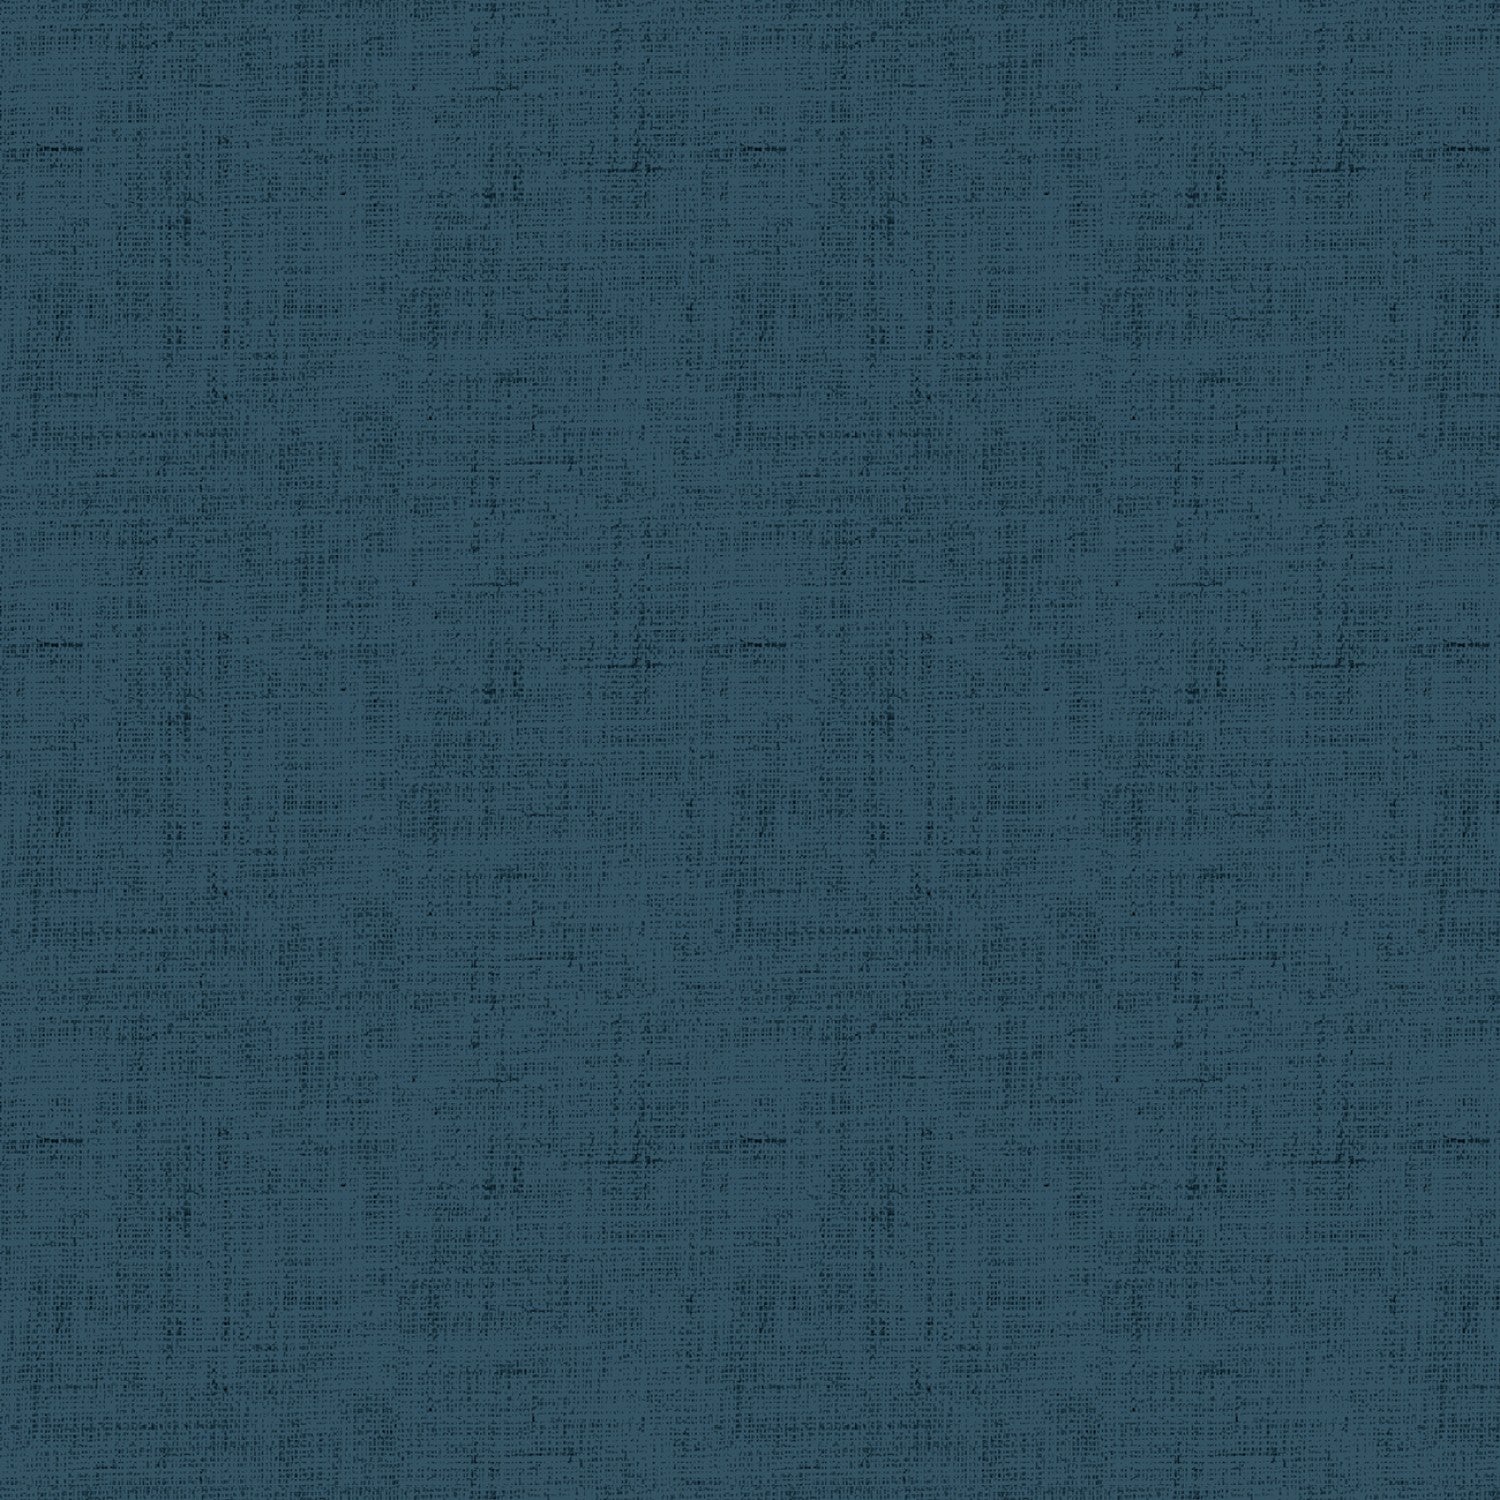 Slate Blue Linen Texture